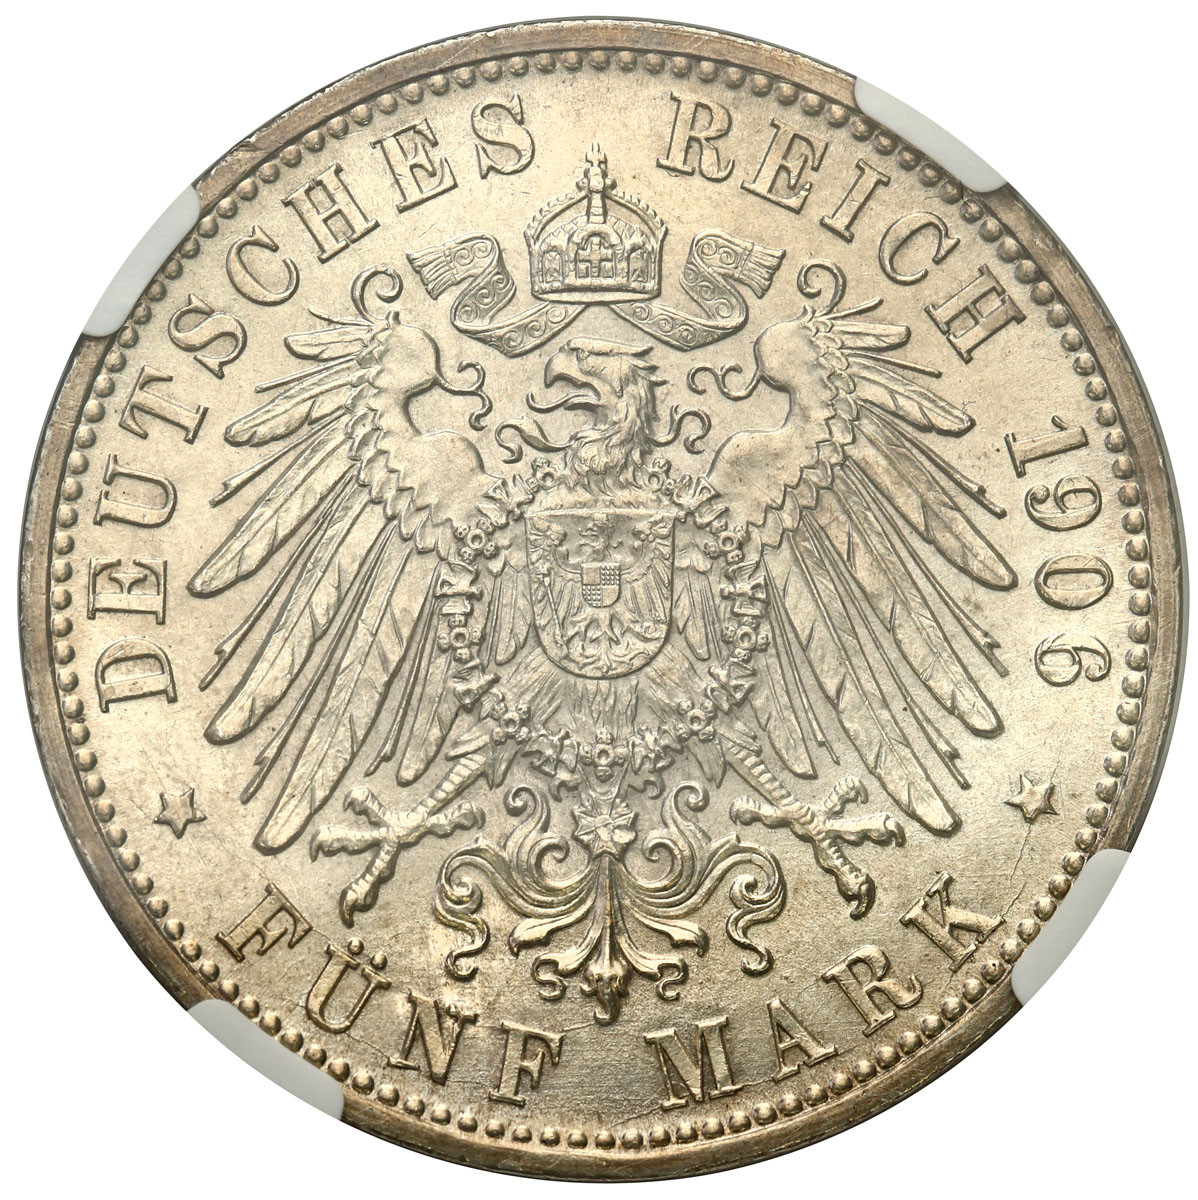 Niemcy, Badenia. 5 marek 1906, Karlsruhe NGC MS63 - PIĘKNE